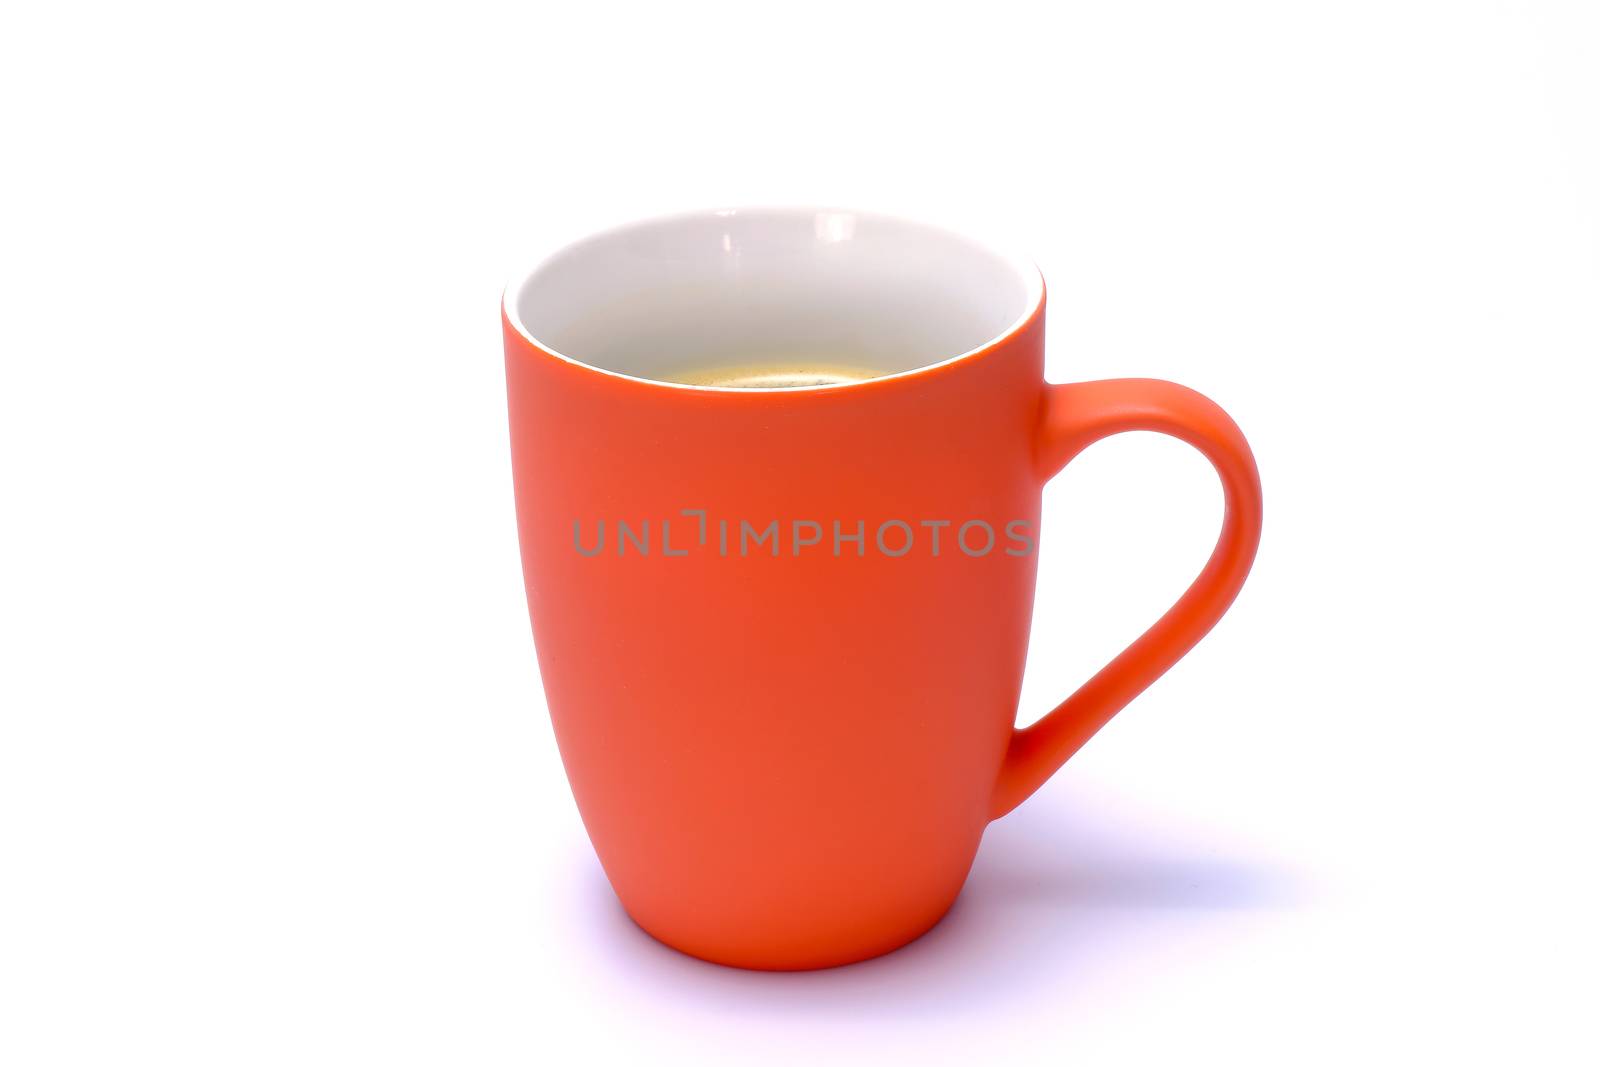 cogffee mug by Nawoot